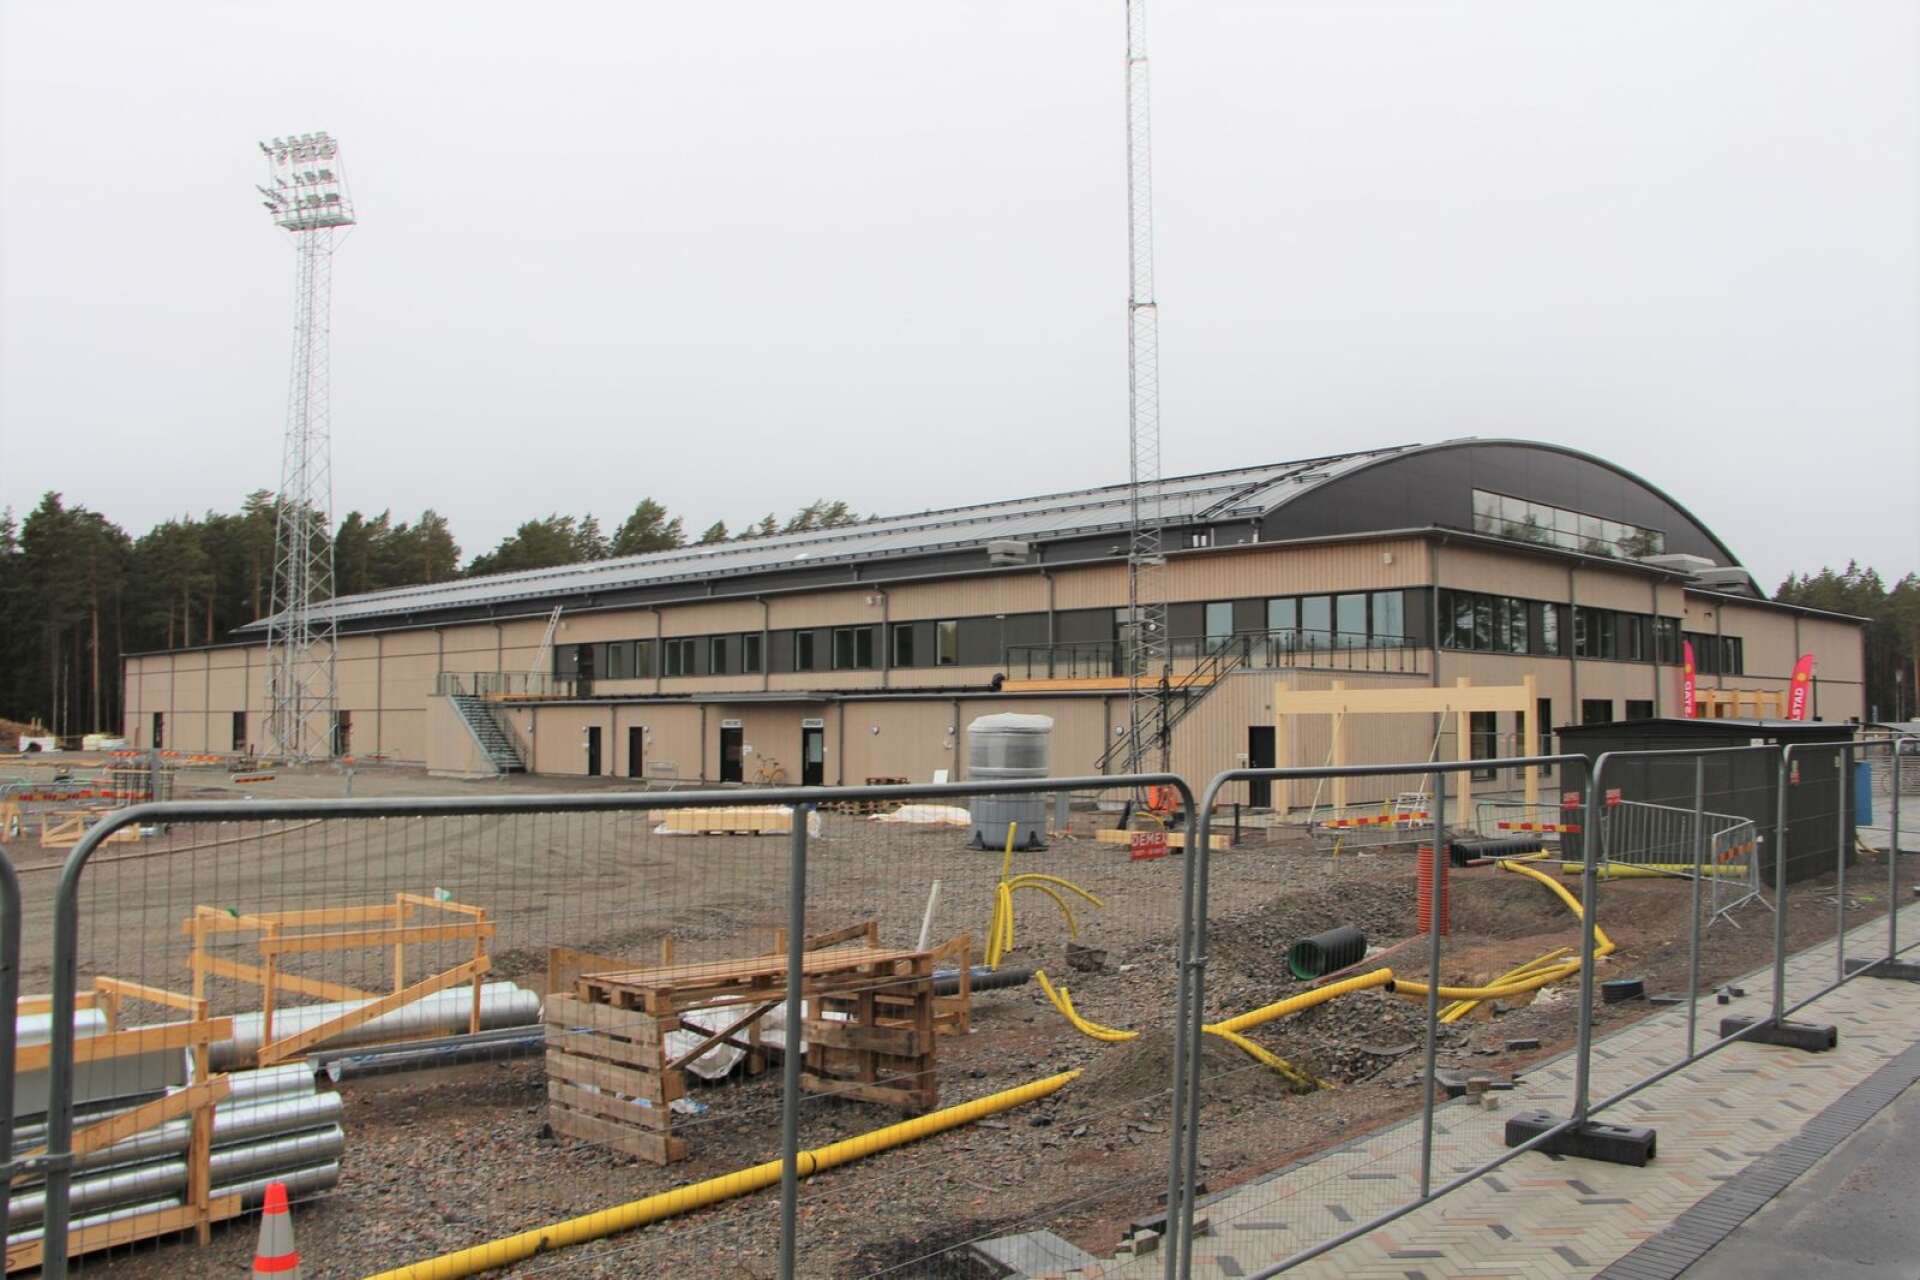 Drygt 130 miljoner kronor har Eva Lisa Holtz arena som är helt byggd i trä kostat där den ligger på det nya arenaområdet Solstadens sportcenter.